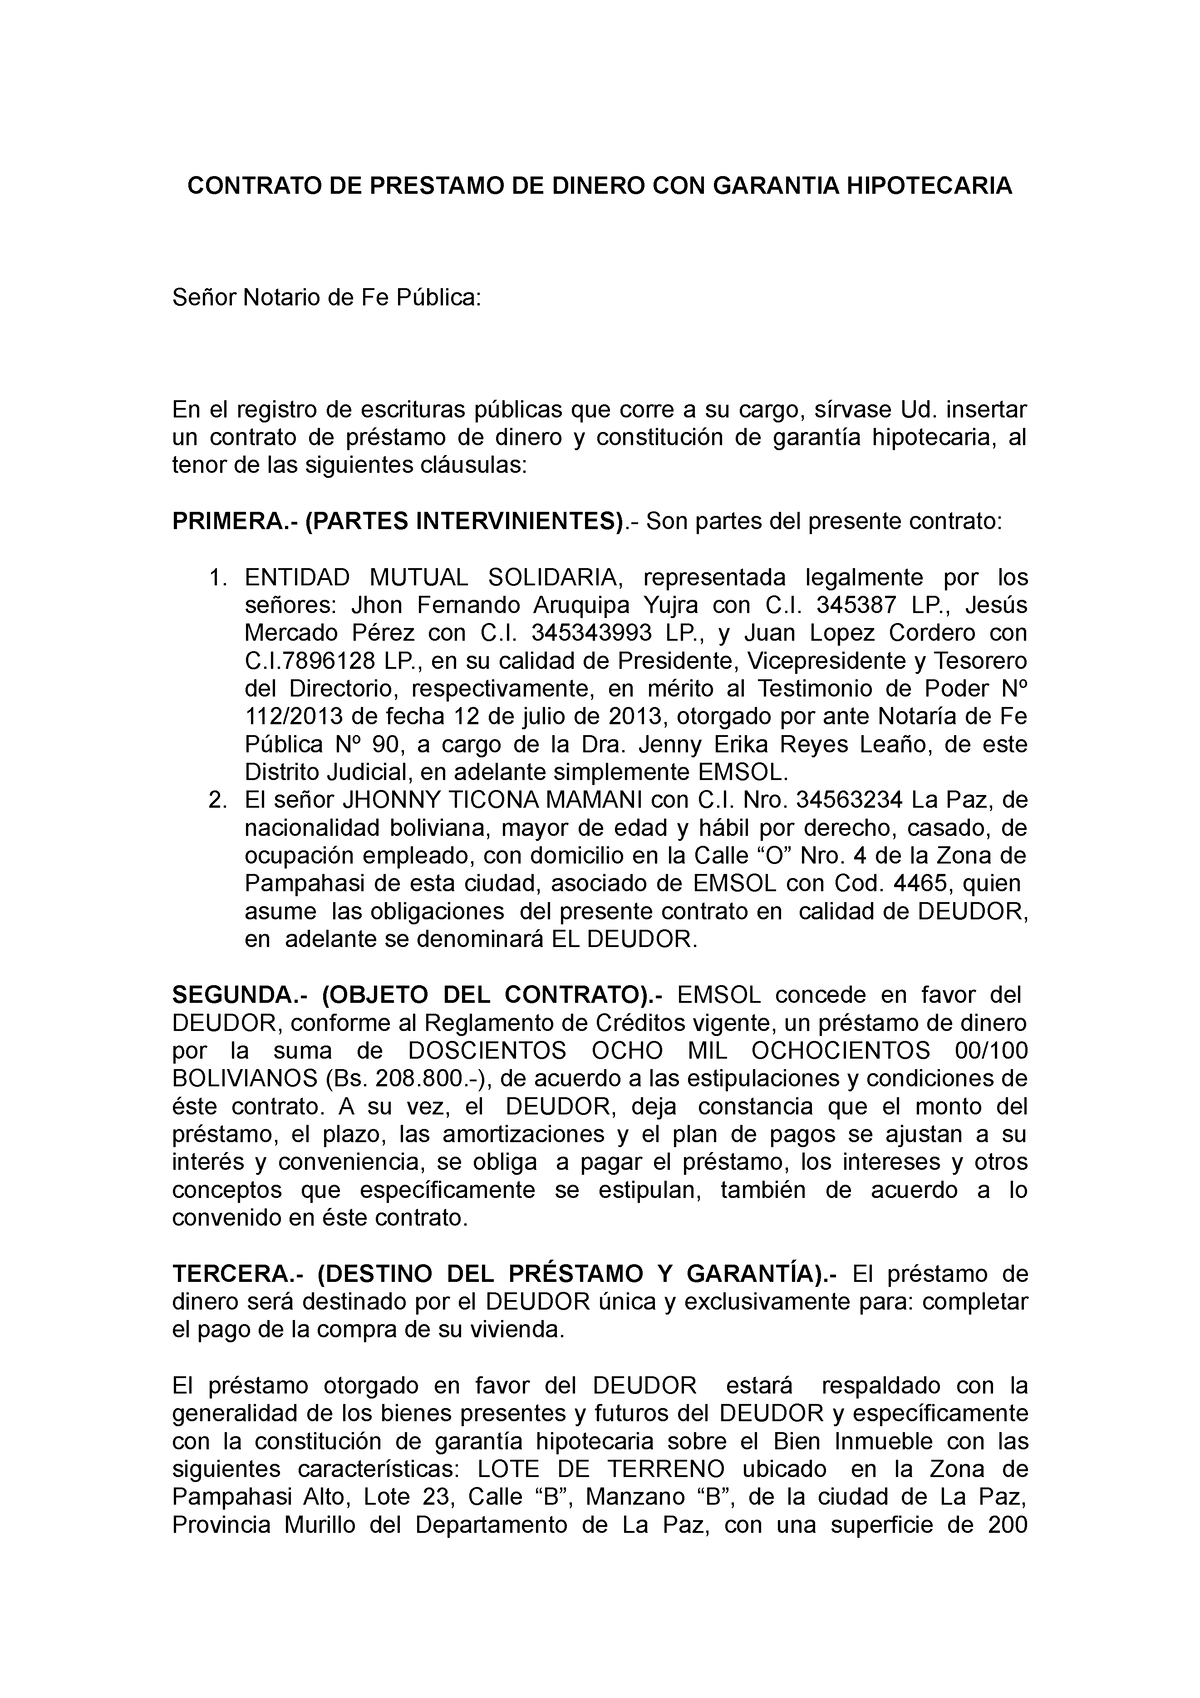 Contrato De Prestamo De Dinero Con Garantia Hipotecaria Contrato De Prestamo De Dinero Con 3973